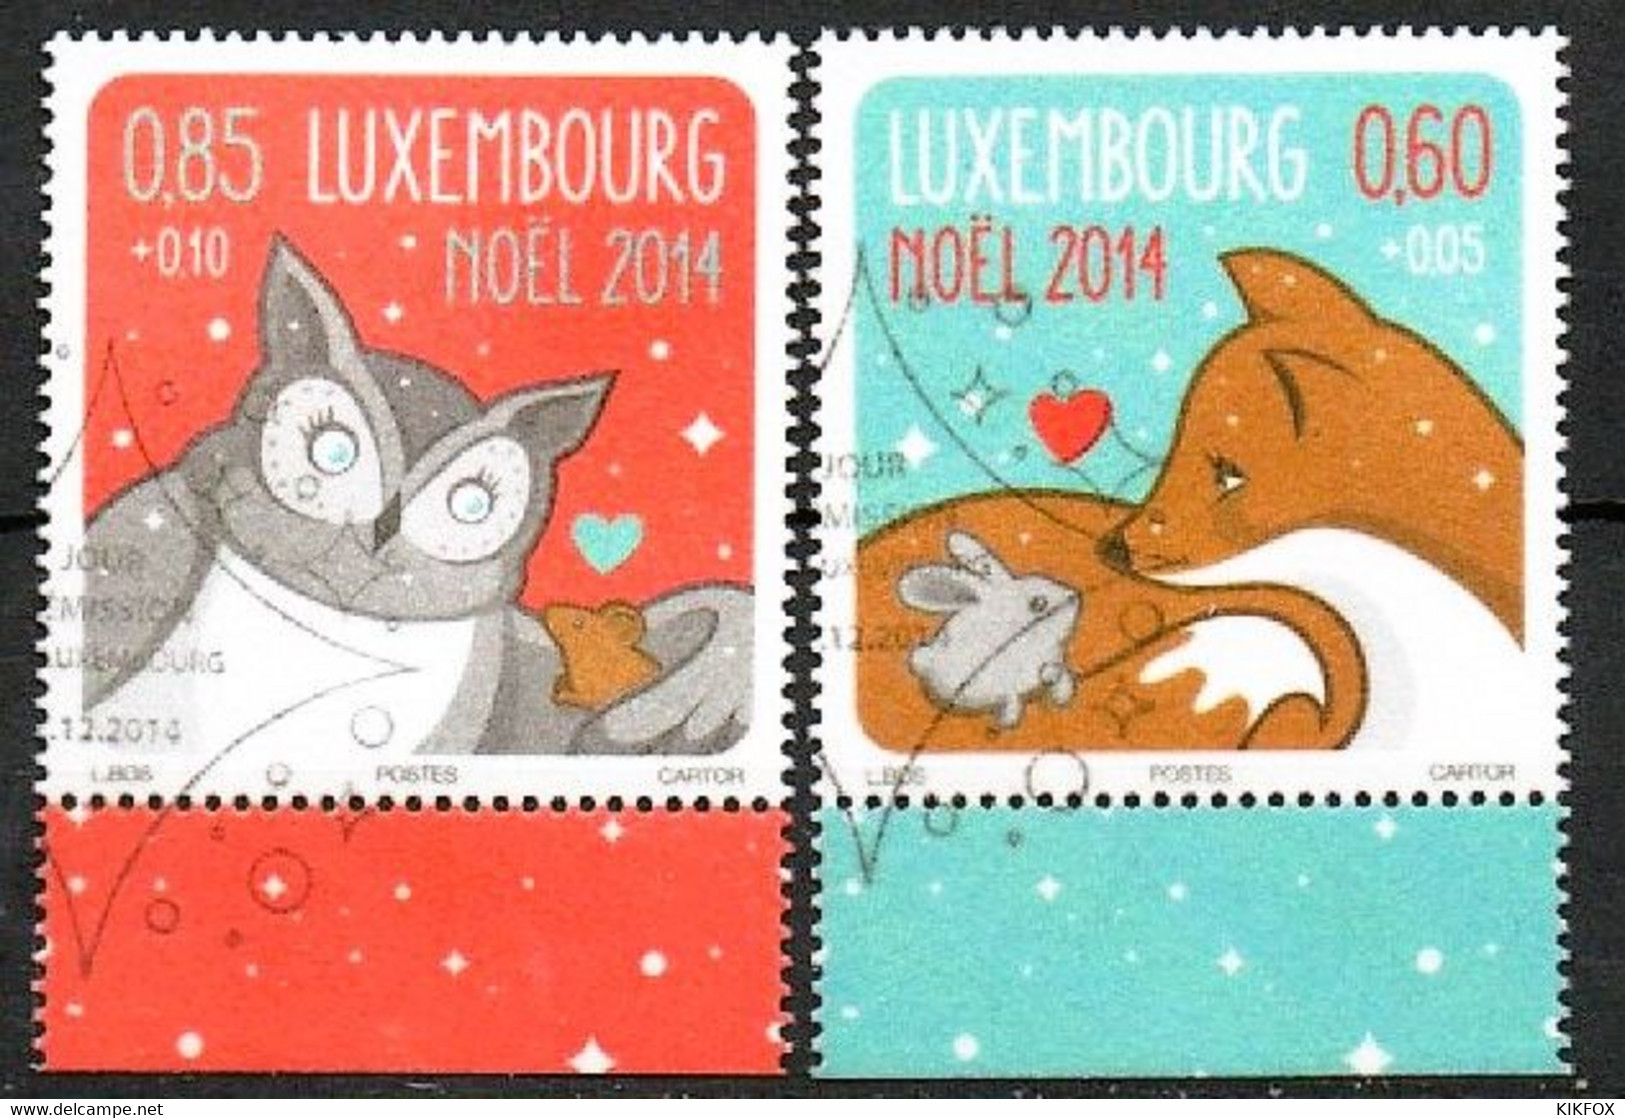 LUXEMBOURG, LUXEMBURG 2014, MI 2026-2027,  WEIHNACHTEN, NOEL,  ESST GESTEMPELT - Used Stamps